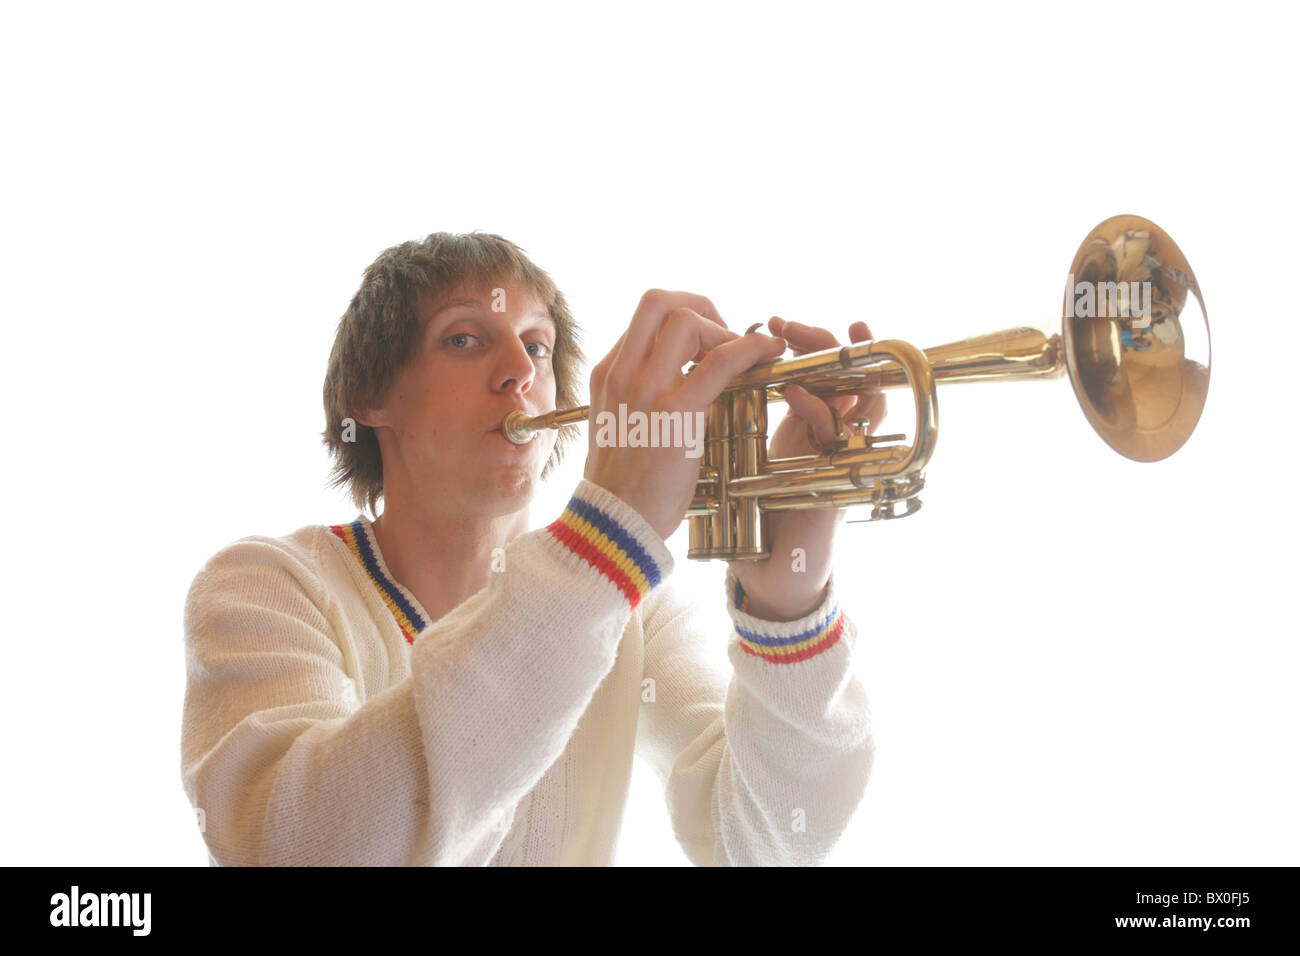 Andy Ferris, musicista e intrattenitore di talento, ha iniziato come intrattenitore per bambini. Può anche firmare il suo atto per la disabilità uditiva. Foto Stock